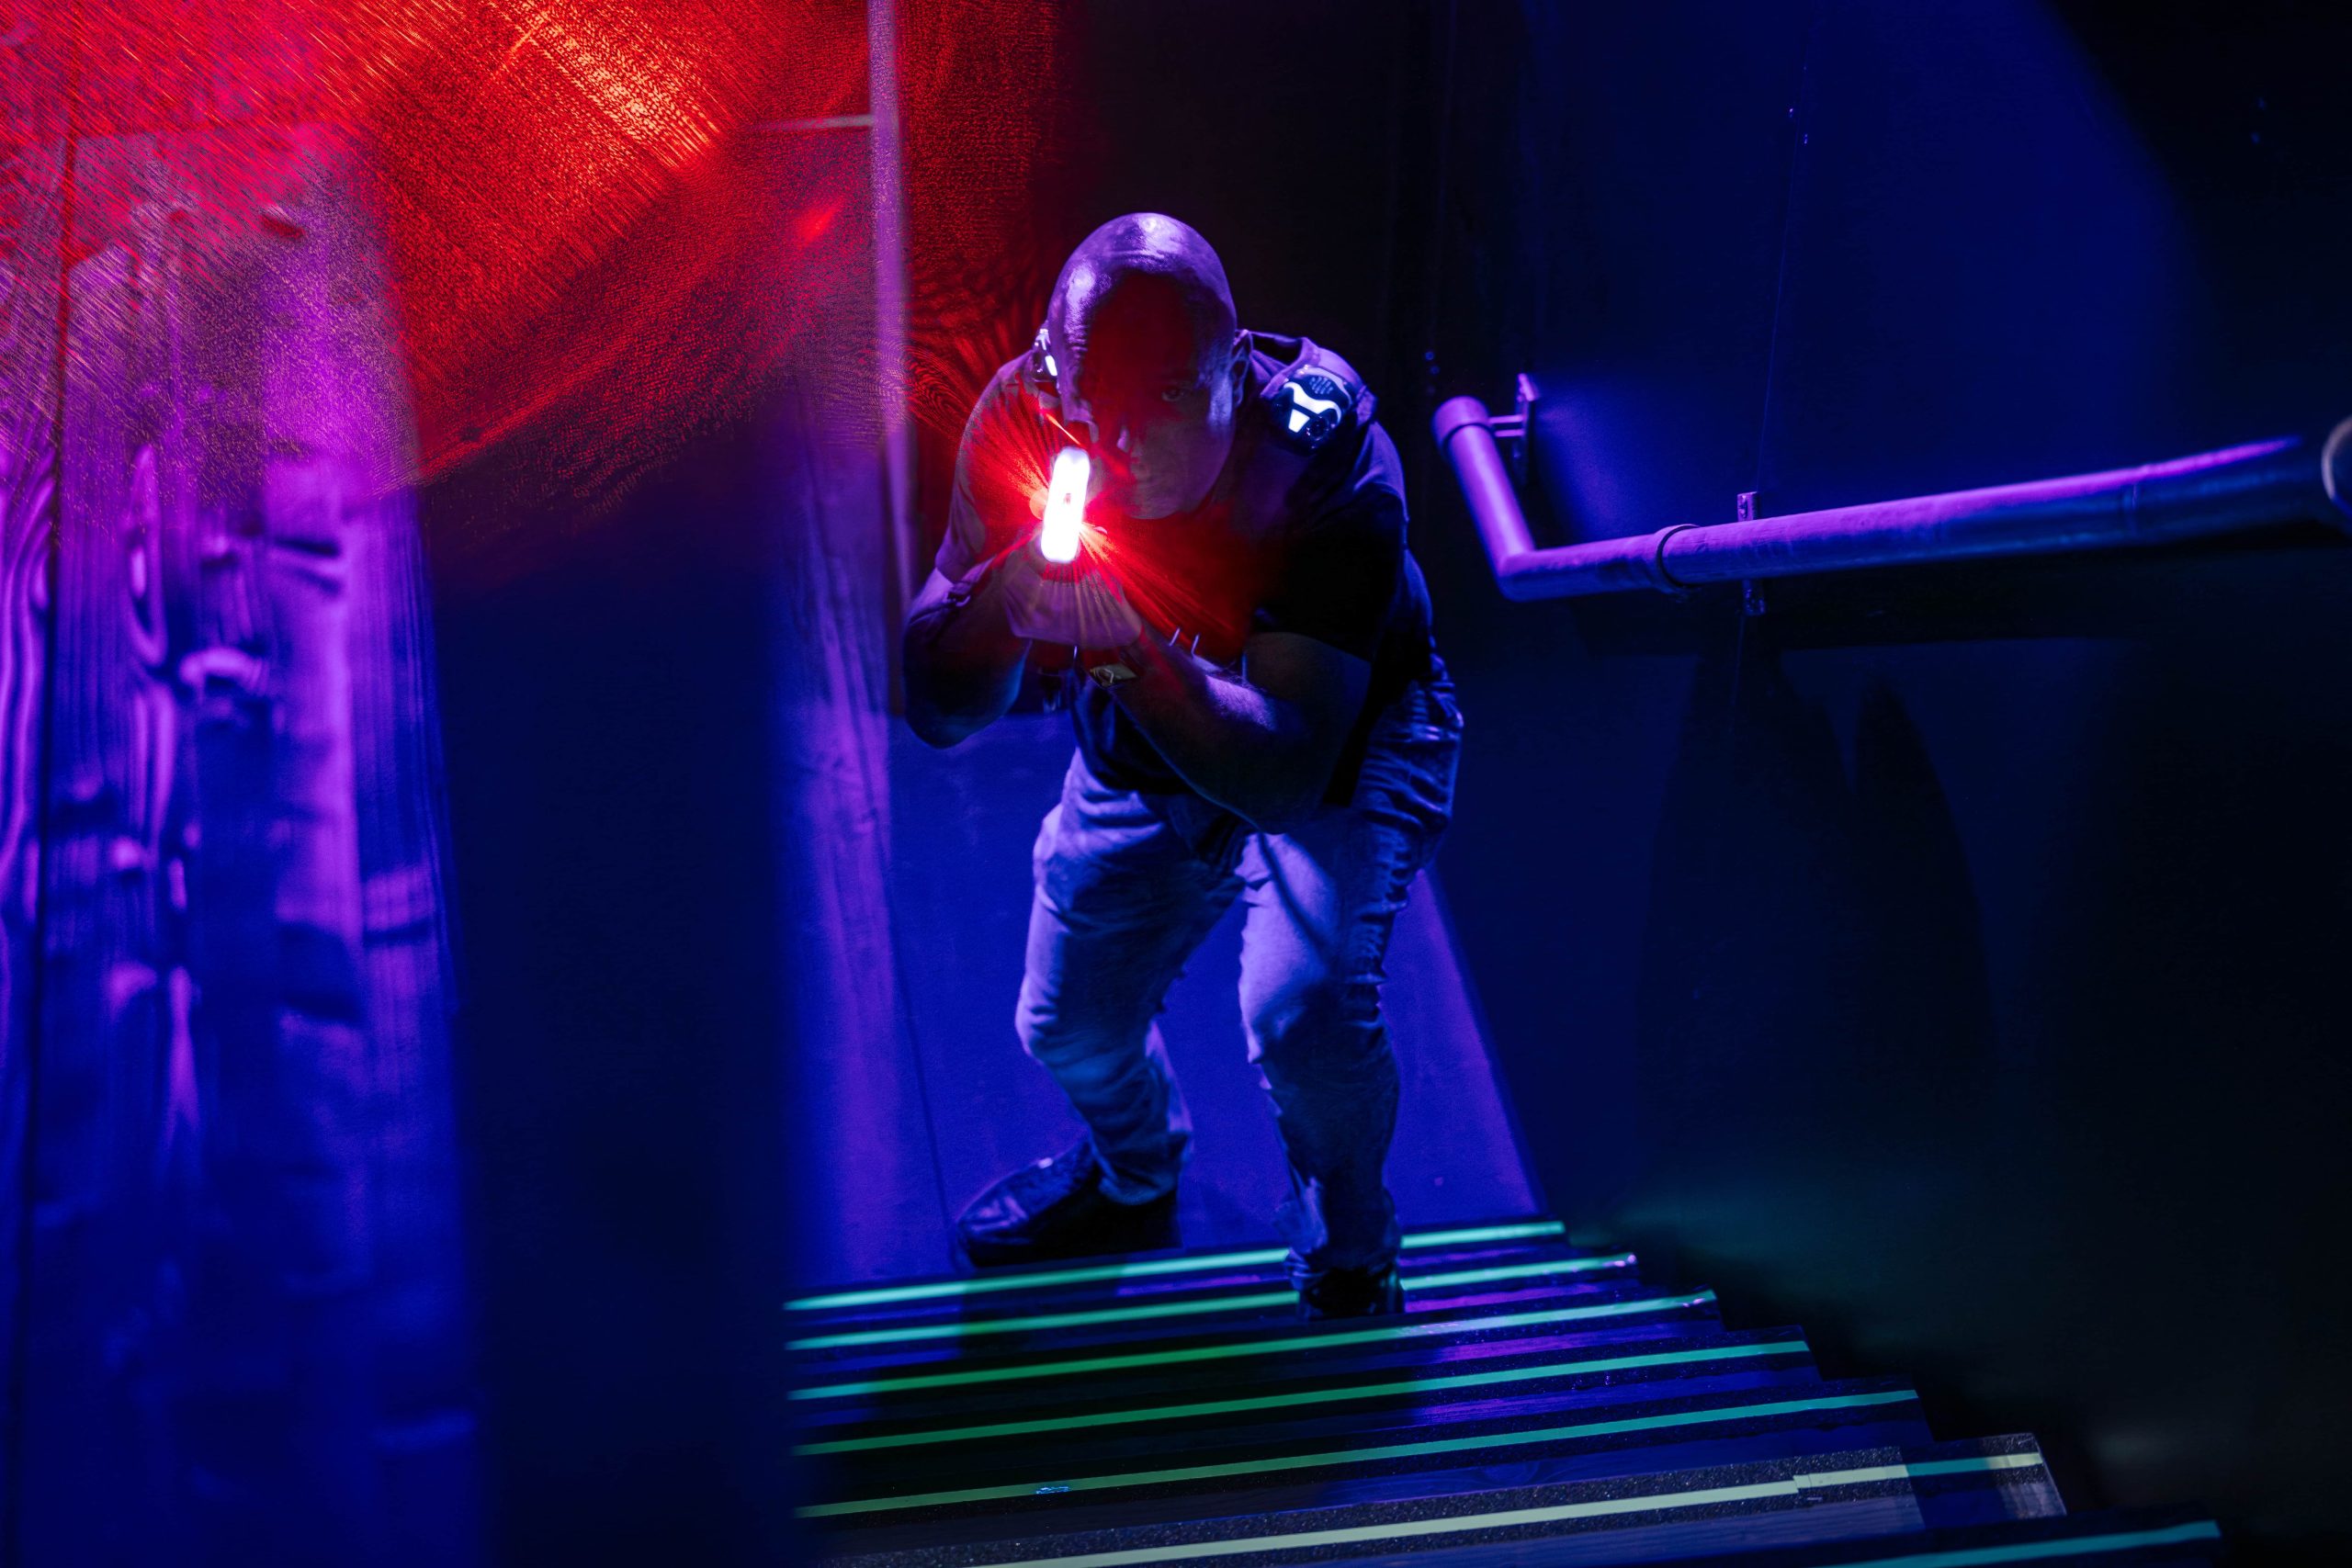 Joueur équipé pour le lasertag prêt pour l'action dans une arène éclairée au néon.